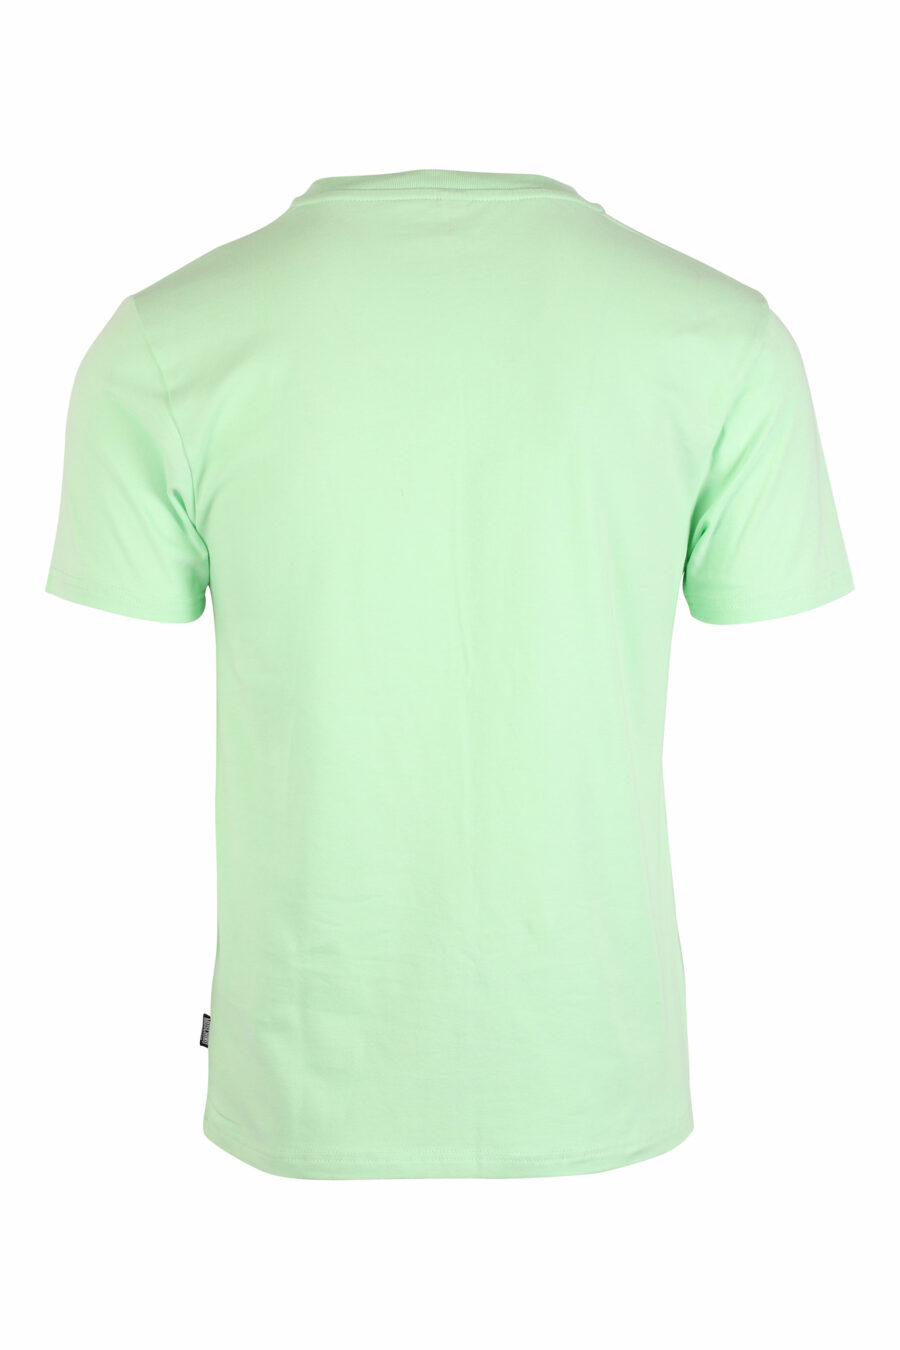 T-shirt slim vert menthe avec logo de l'ours underbear - IMG 1385